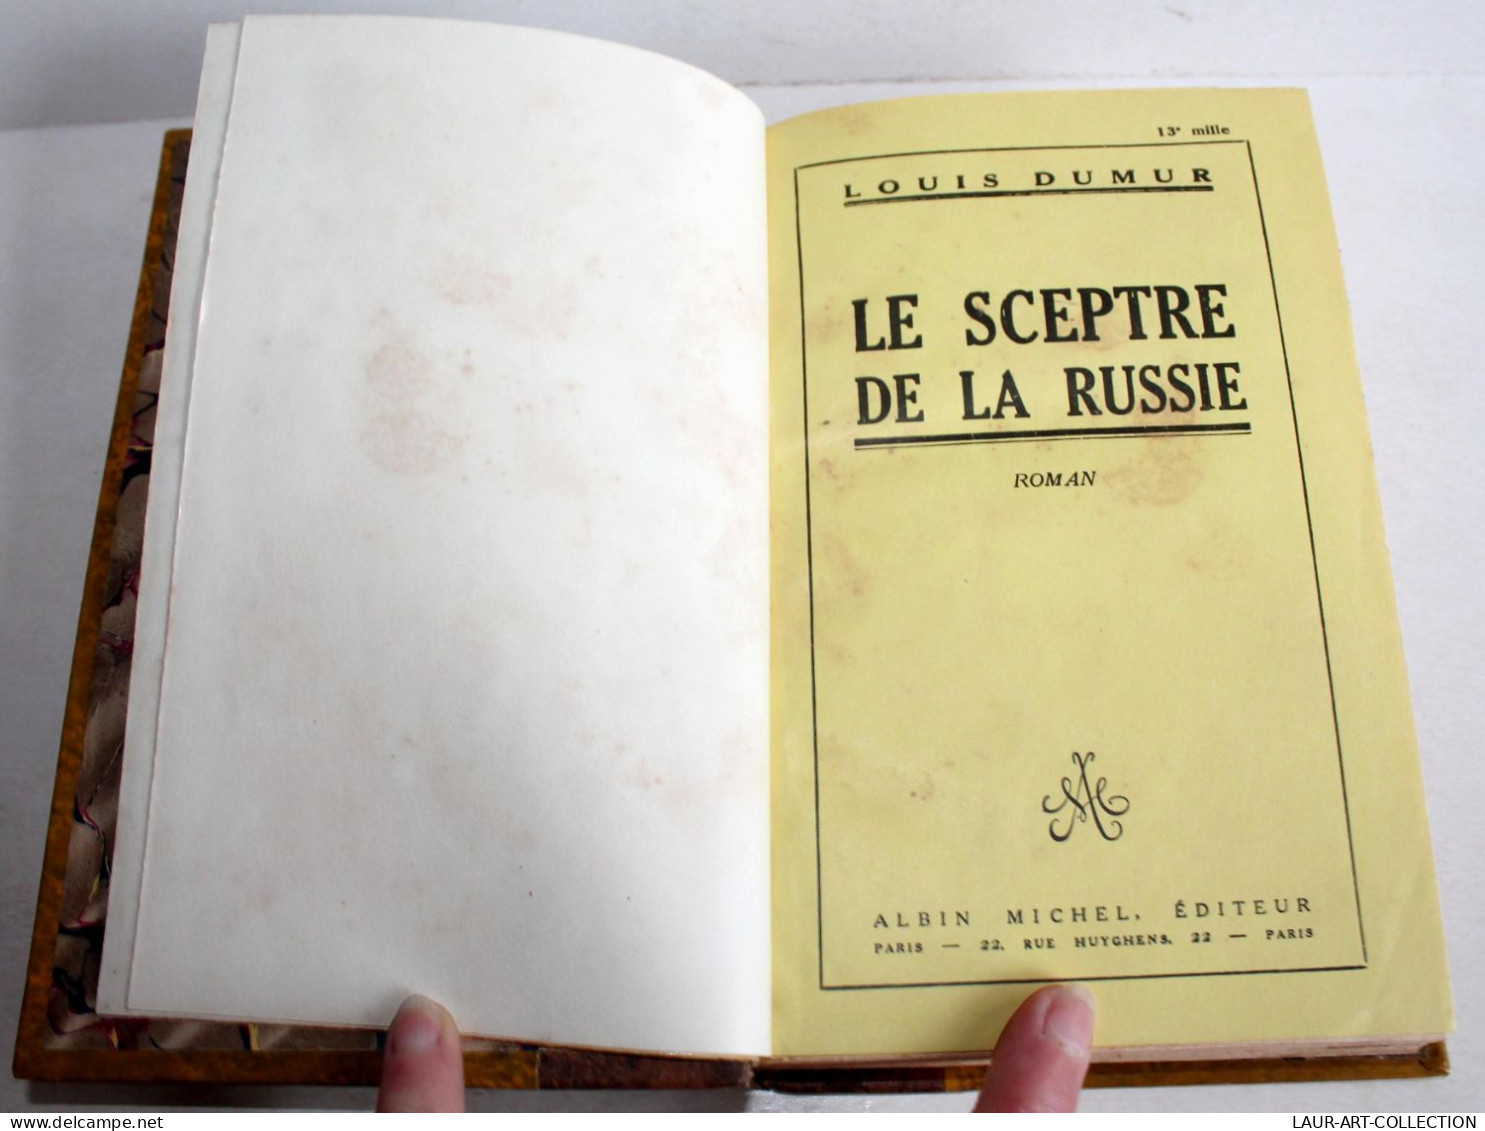 LE SPECTRE DE LA RUSSIE, ROMAN De LOUIS DUMUR 1929 ALBIN MICHEL EDITEUR, LIVRE / LIVRE ANCIEN XXe SIECLE (2204.134) - 1901-1940